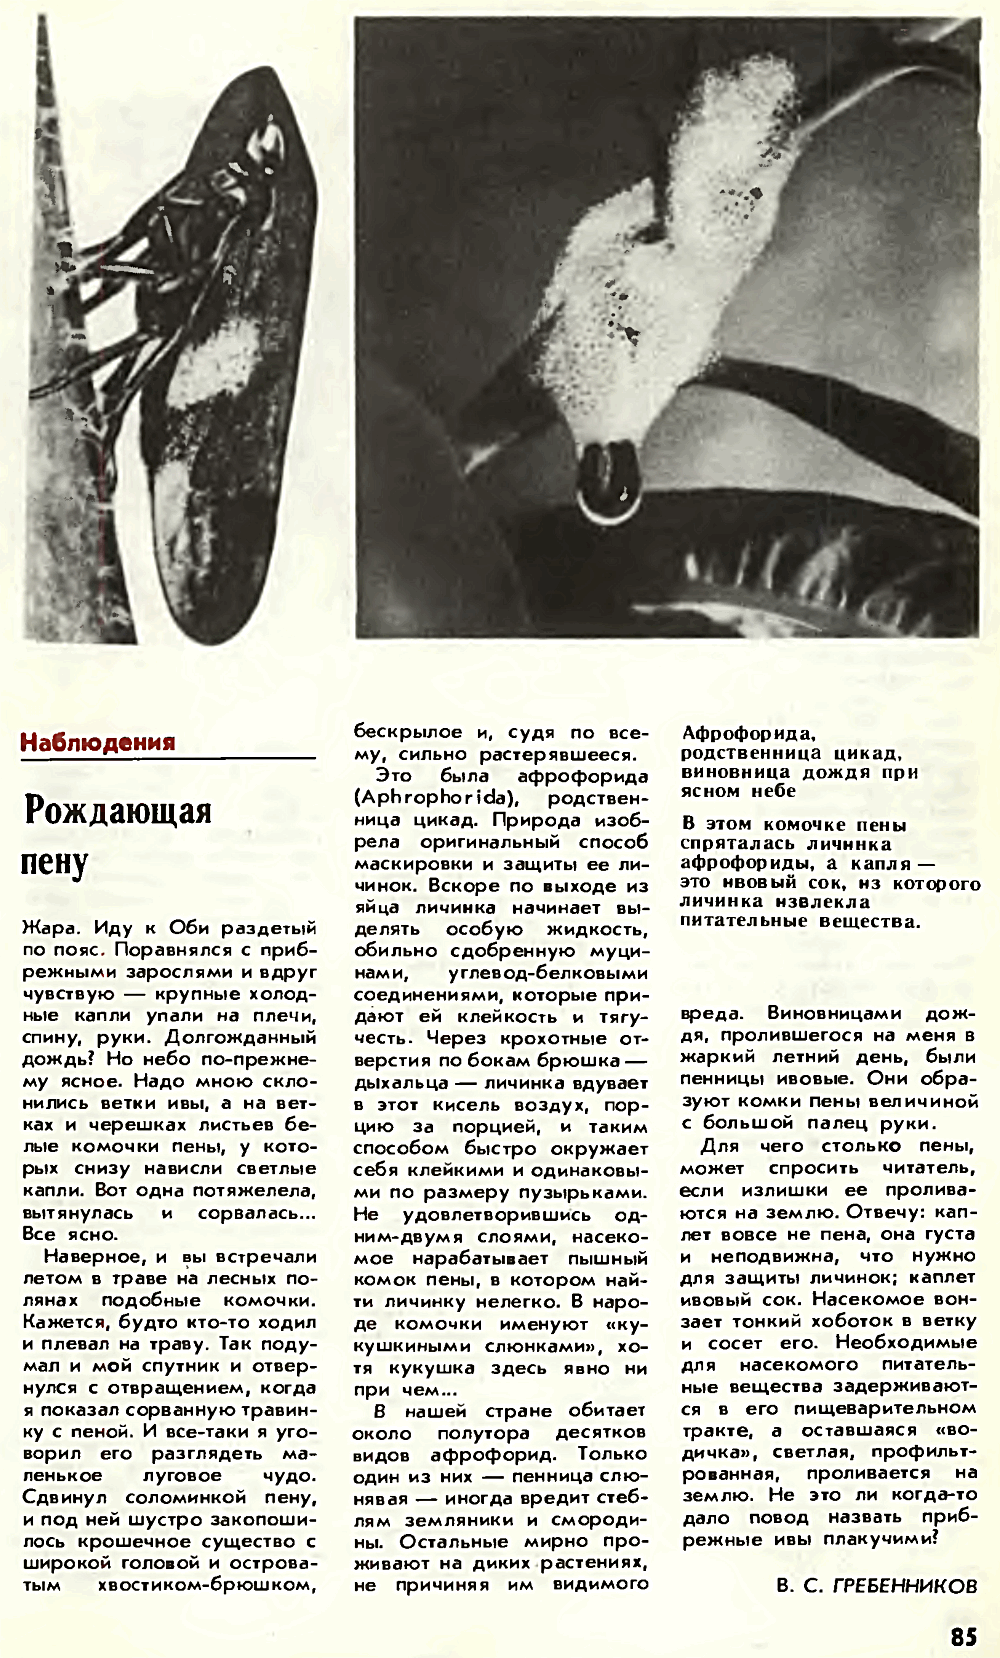 Рождающая пену. В.С. Гребенников. Химия и жизнь, №9, 1980, с.85